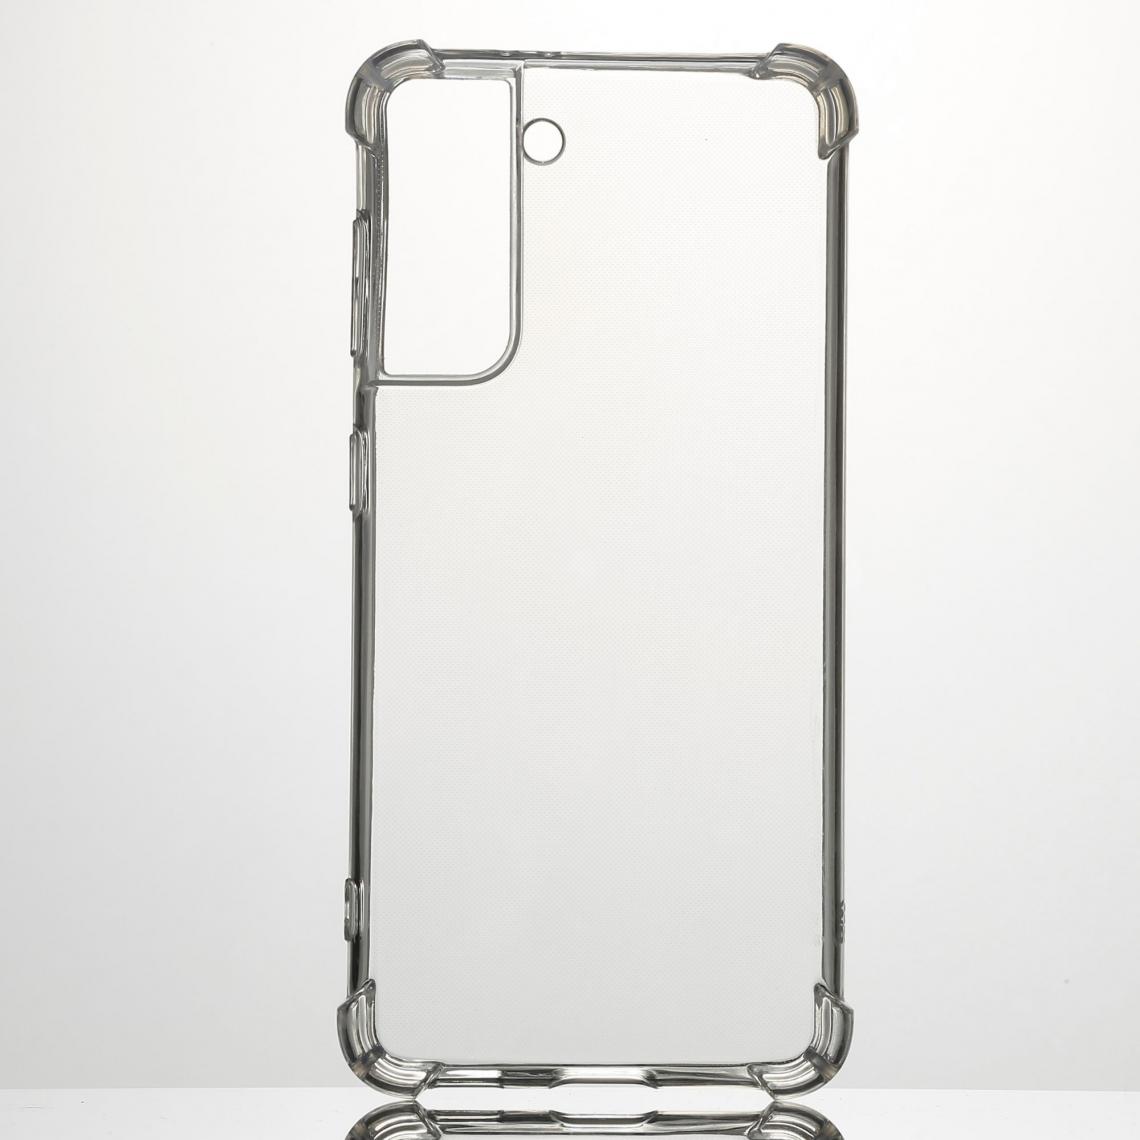 We - WE Coque de protection transparente pour Samsung Galaxy S21. Fabriqué en TPU. Ultra résistant. Apparence du téléphone conservée. - Coque, étui smartphone